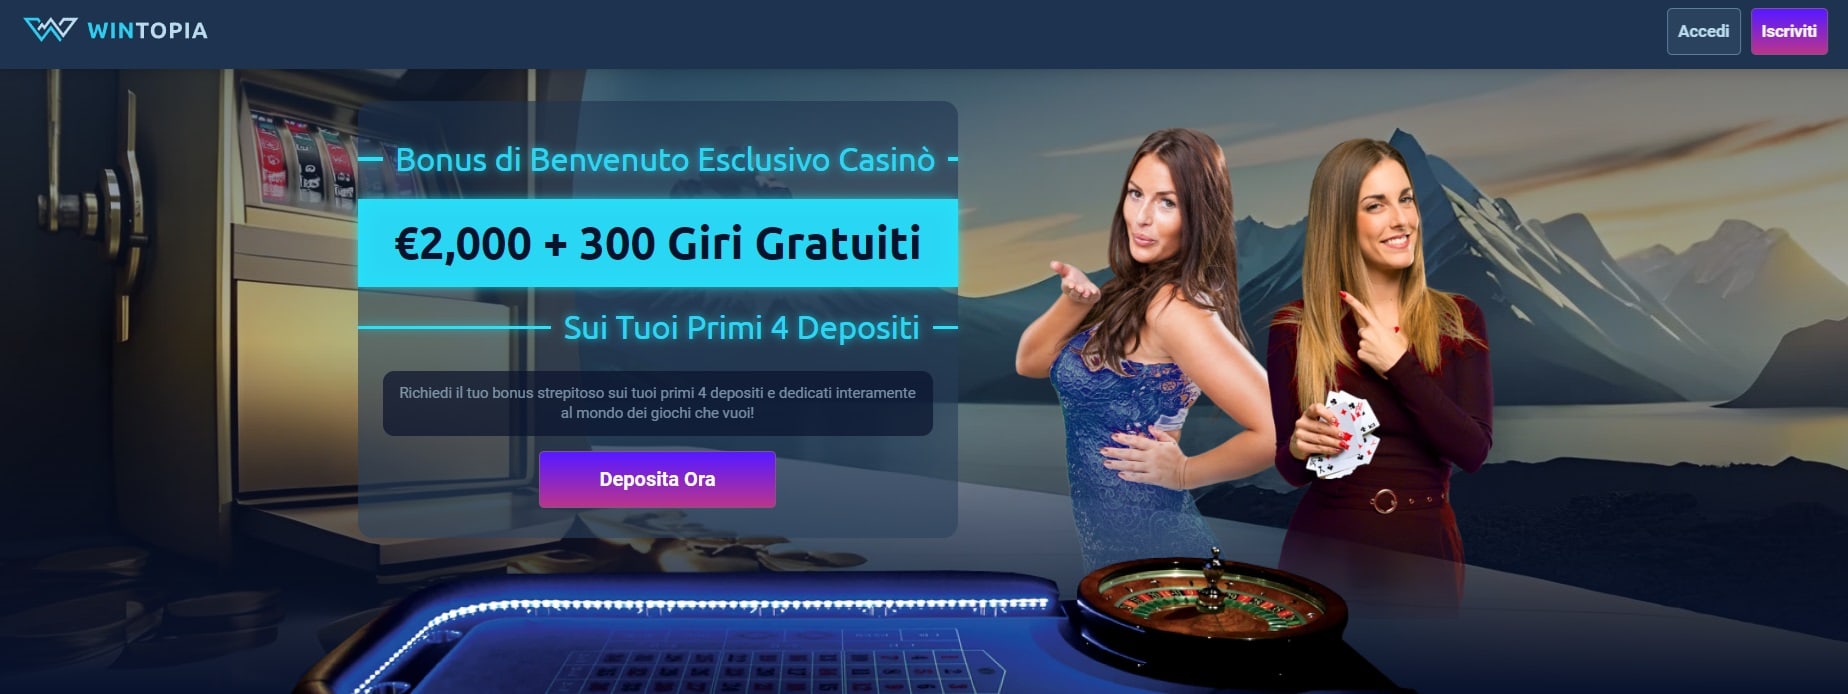 casino stranieri online win topia